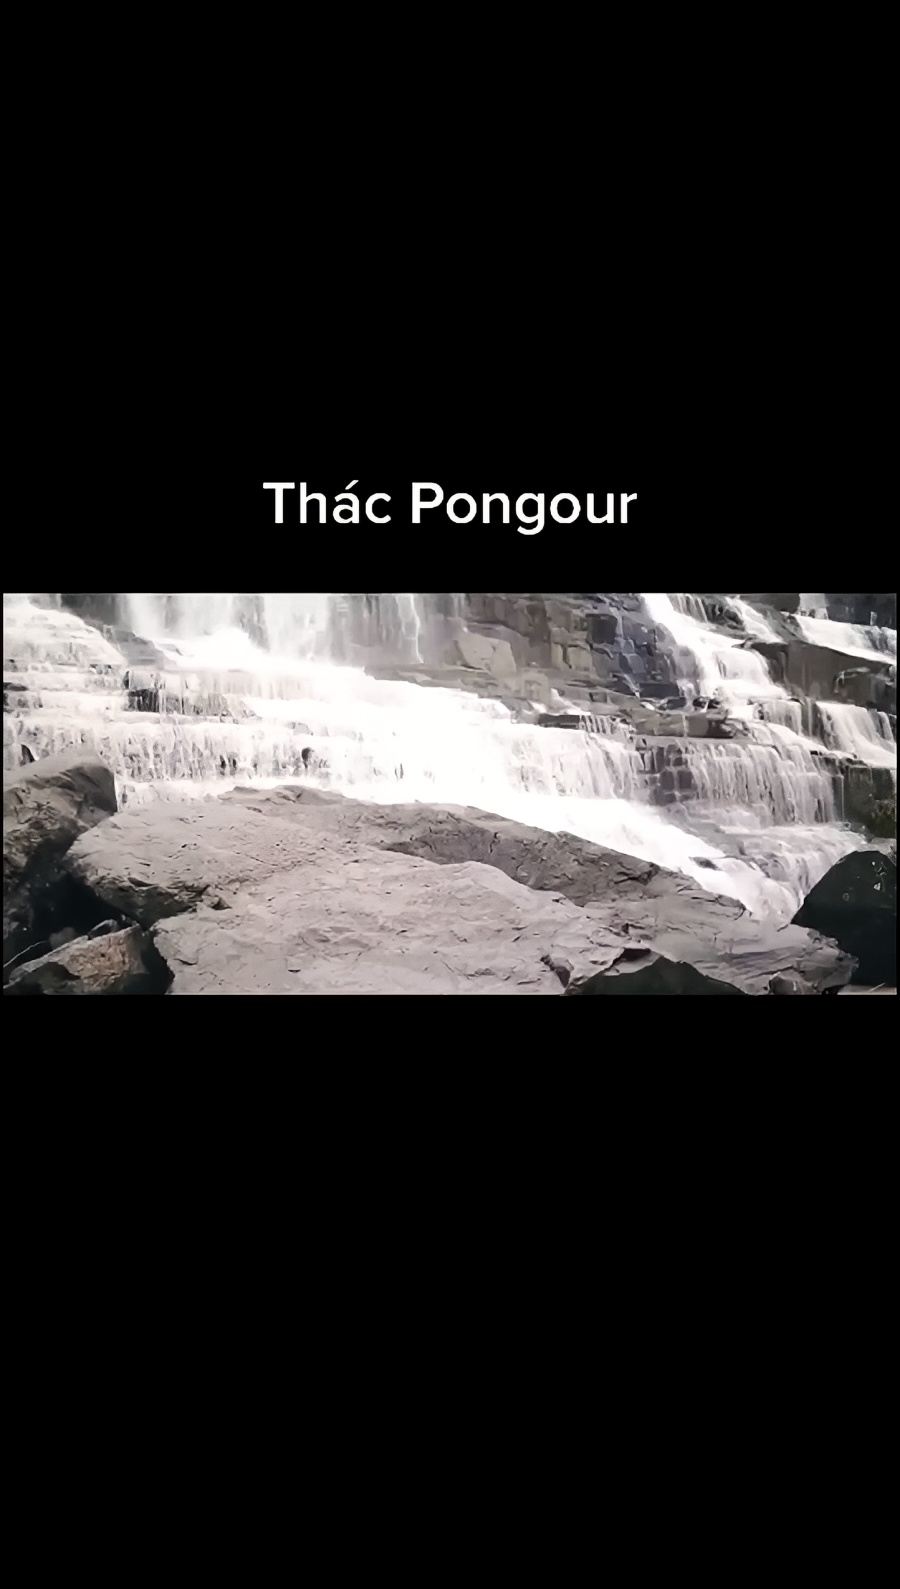 越南最雄伟的瀑布“庞卡尔瀑布”